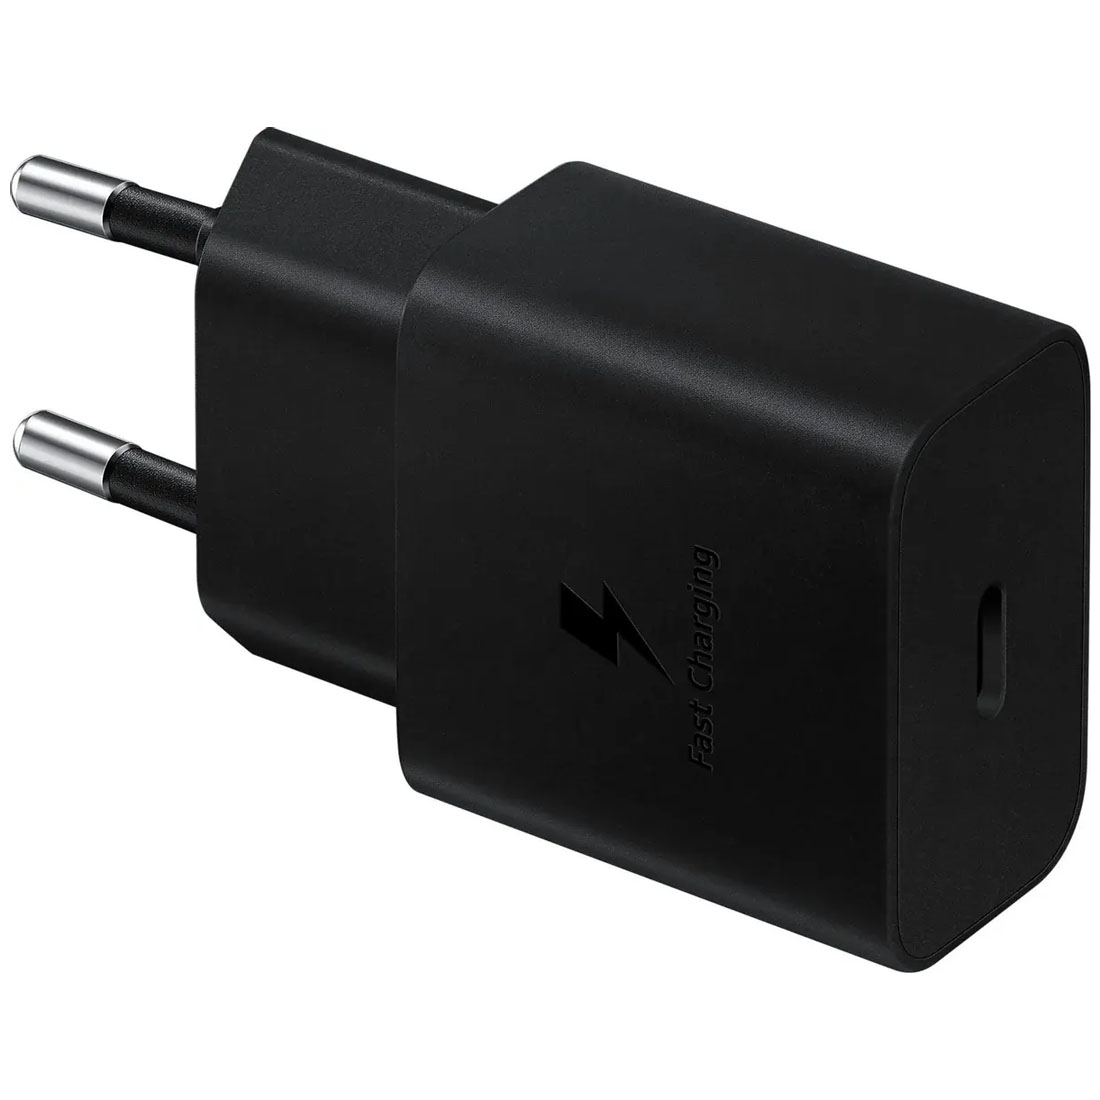 СЗУ (Сетевое зарядное устройство) SAMSUNG EP-T1510, 15W, 1 USB Type C, PD 2.0, цвет черный